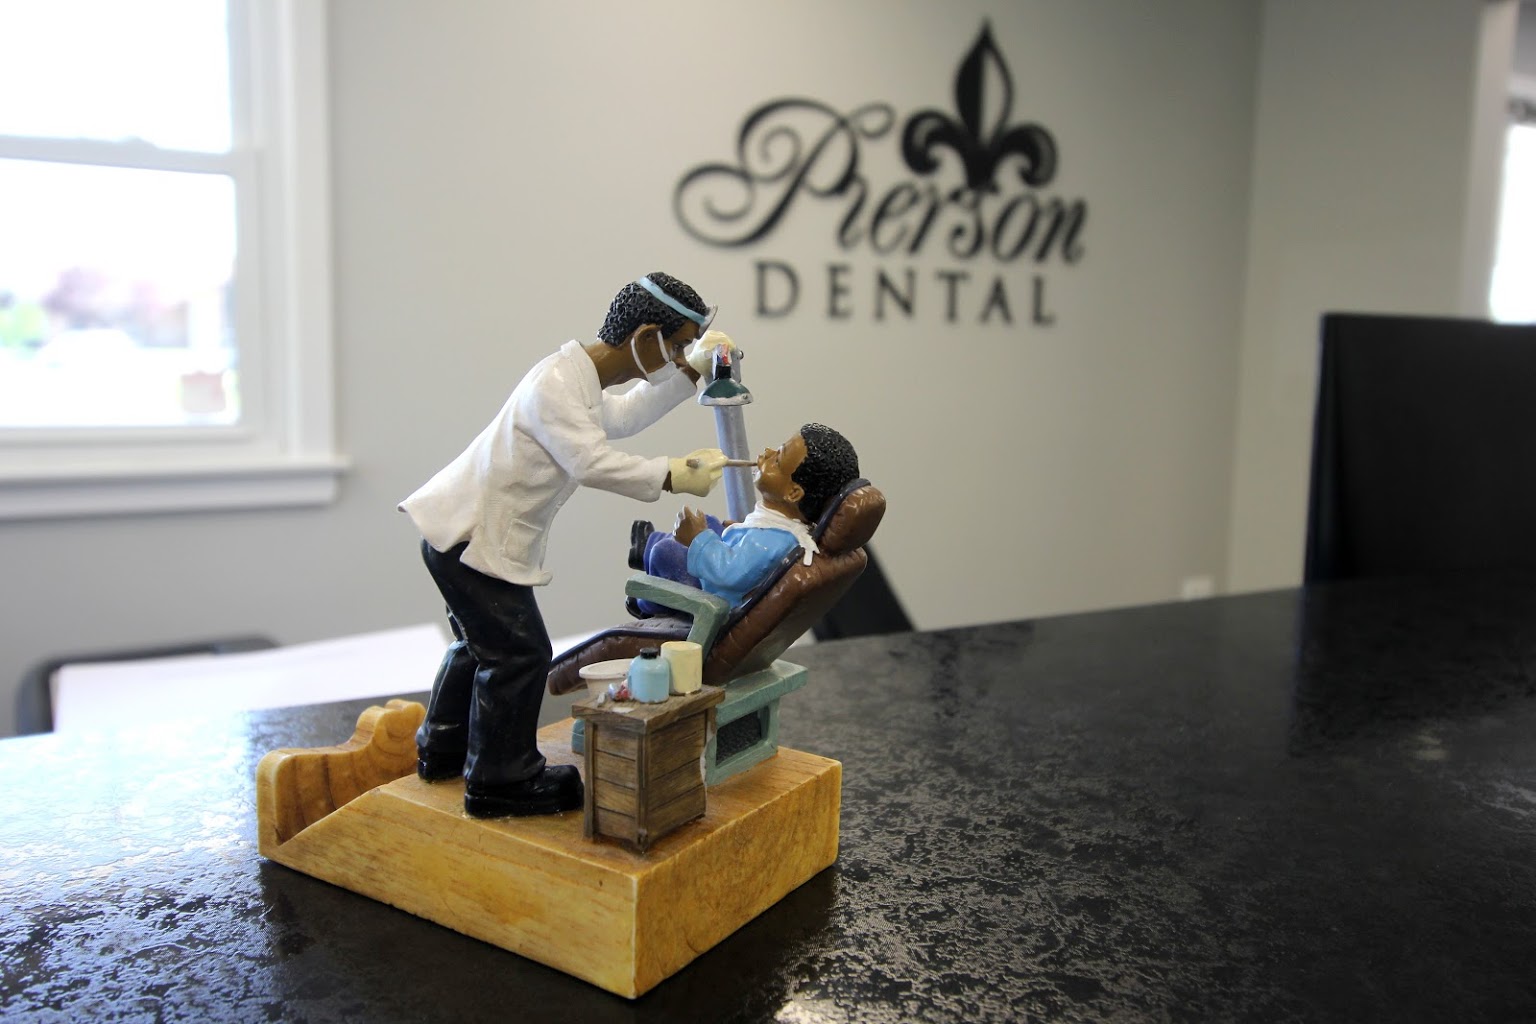 Pierson Dental Office in Sicklerville, NJ